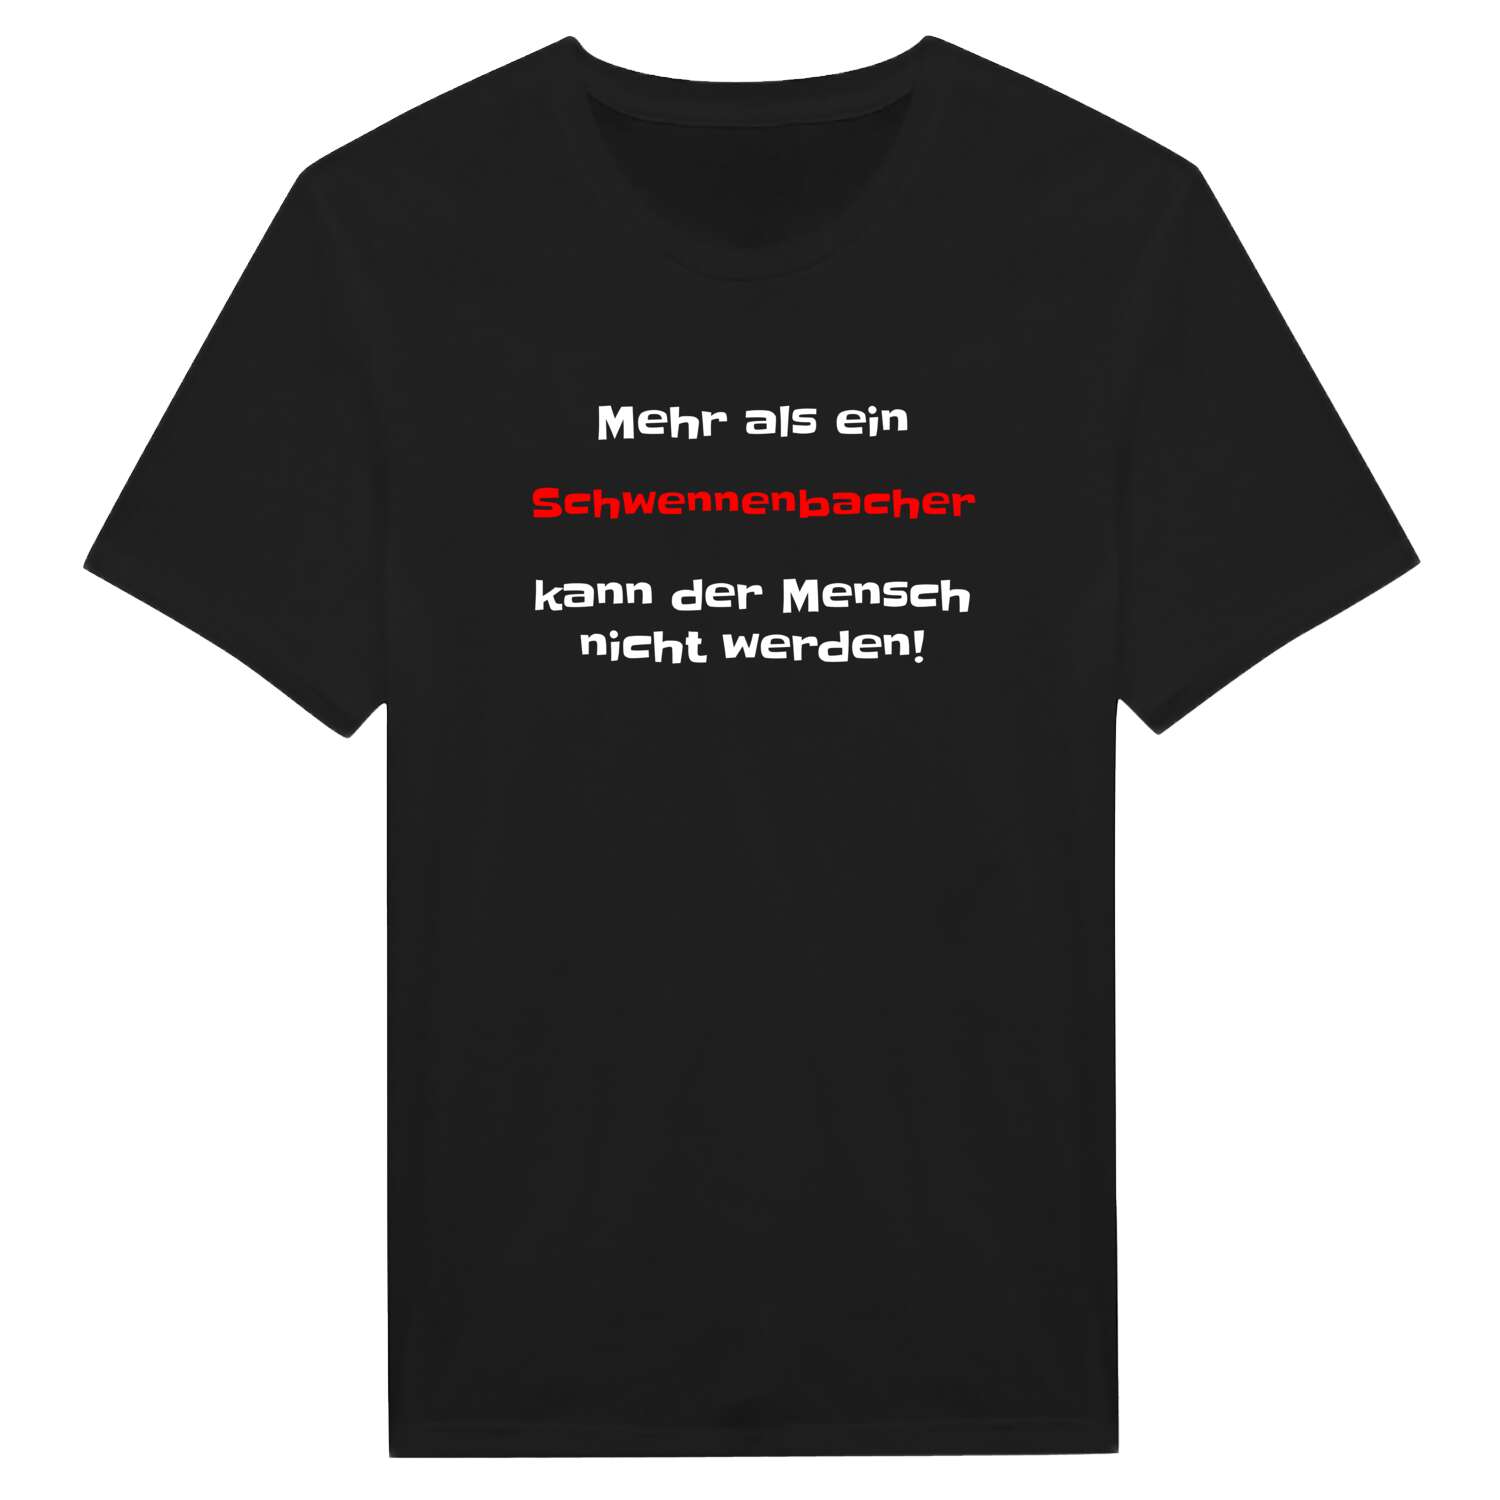 Schwennenbach T-Shirt »Mehr als ein«